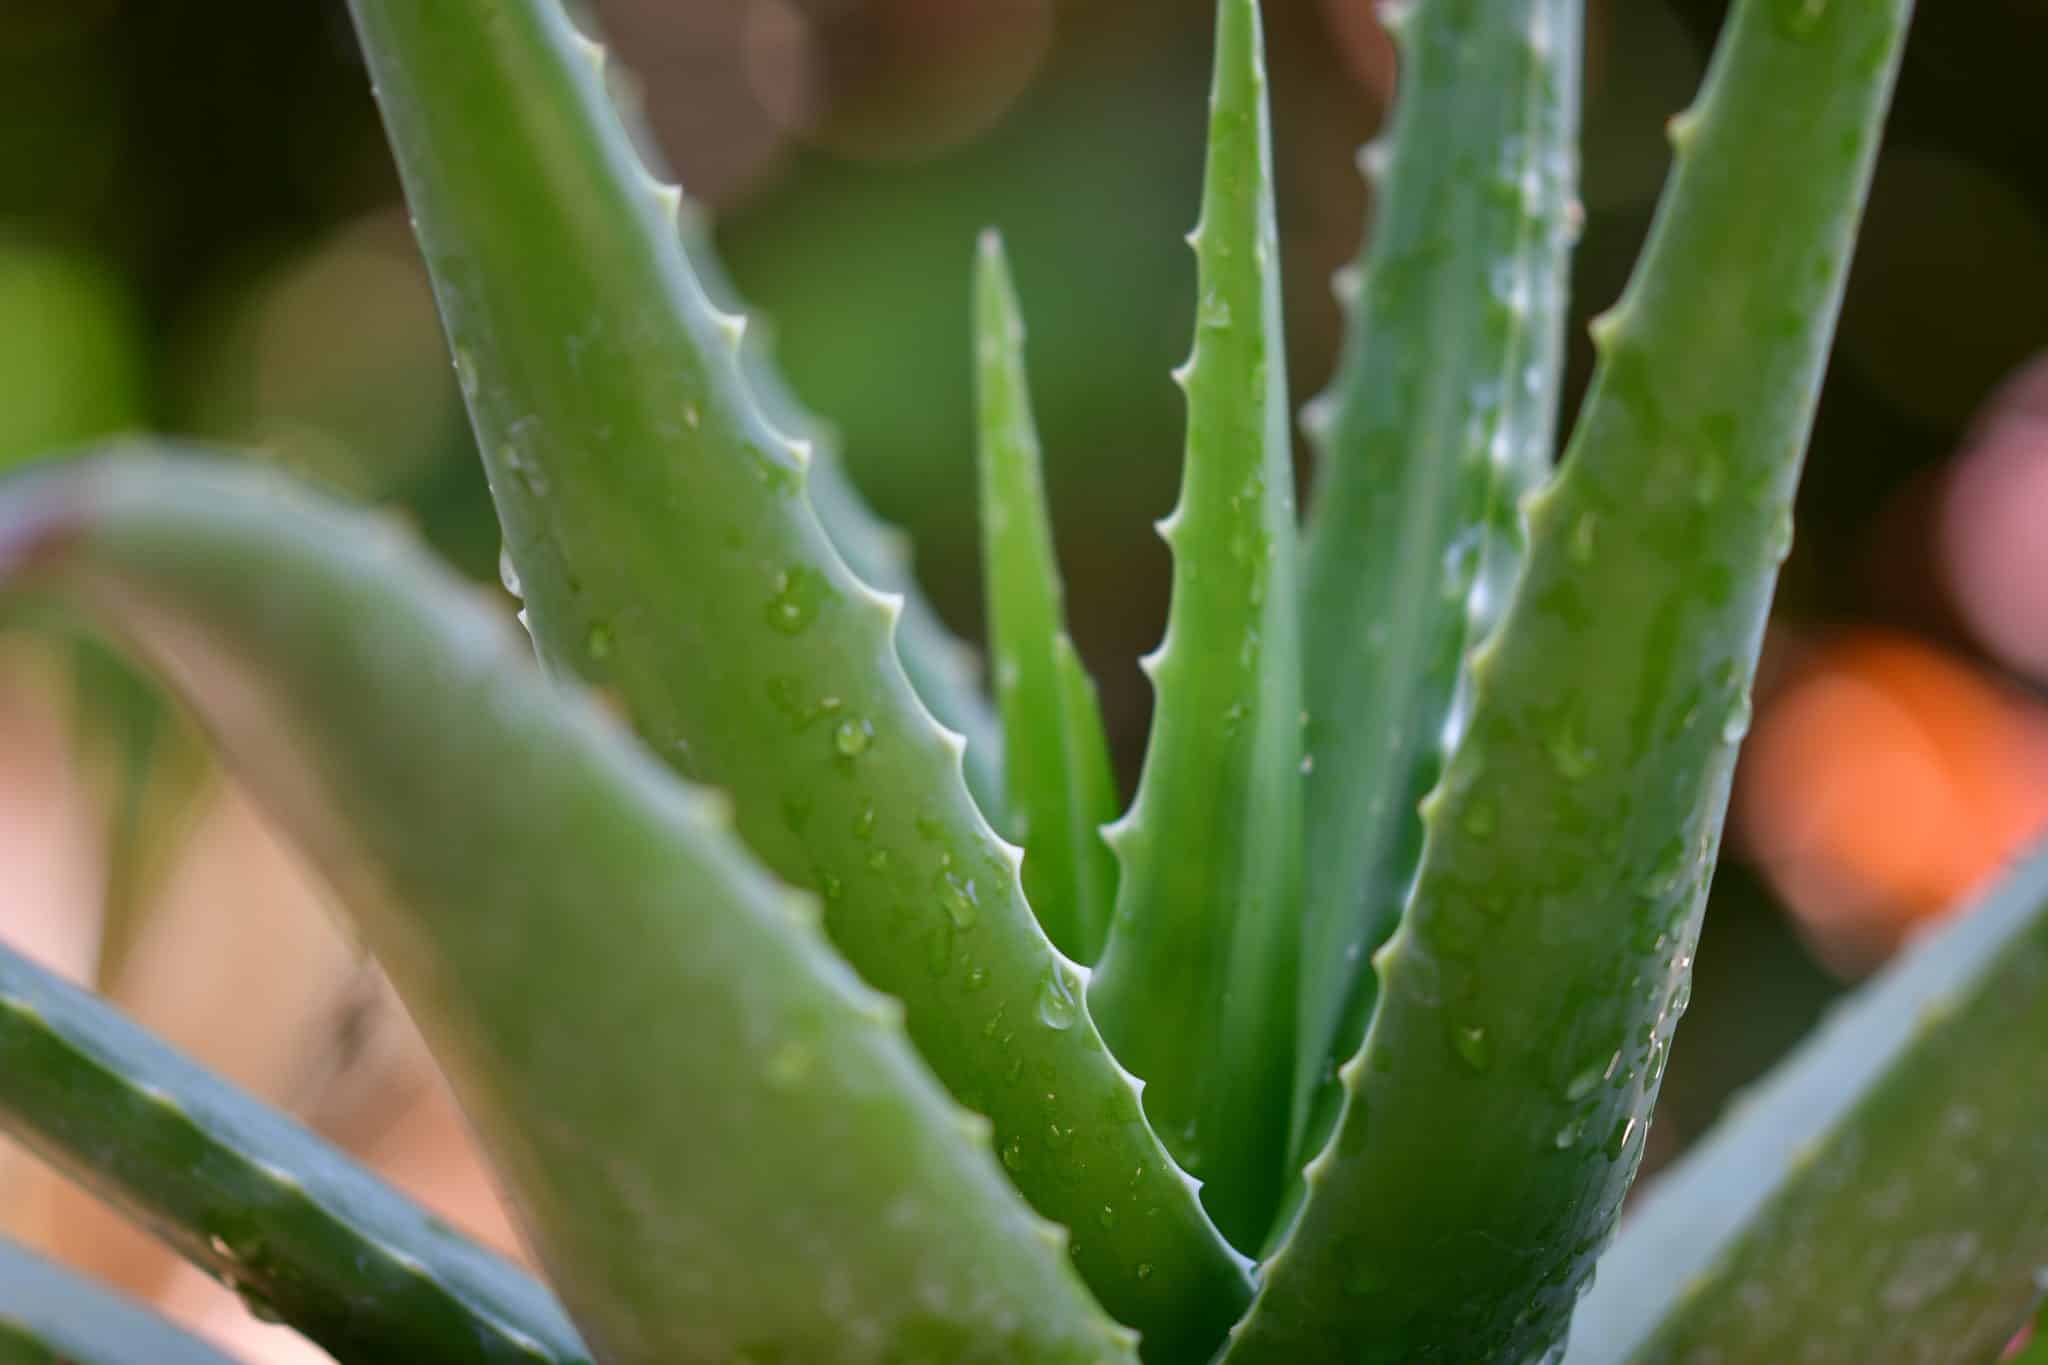 Aloe vera: Zázračná rostlina s mnoha účinky. Na co všechno lze využít?